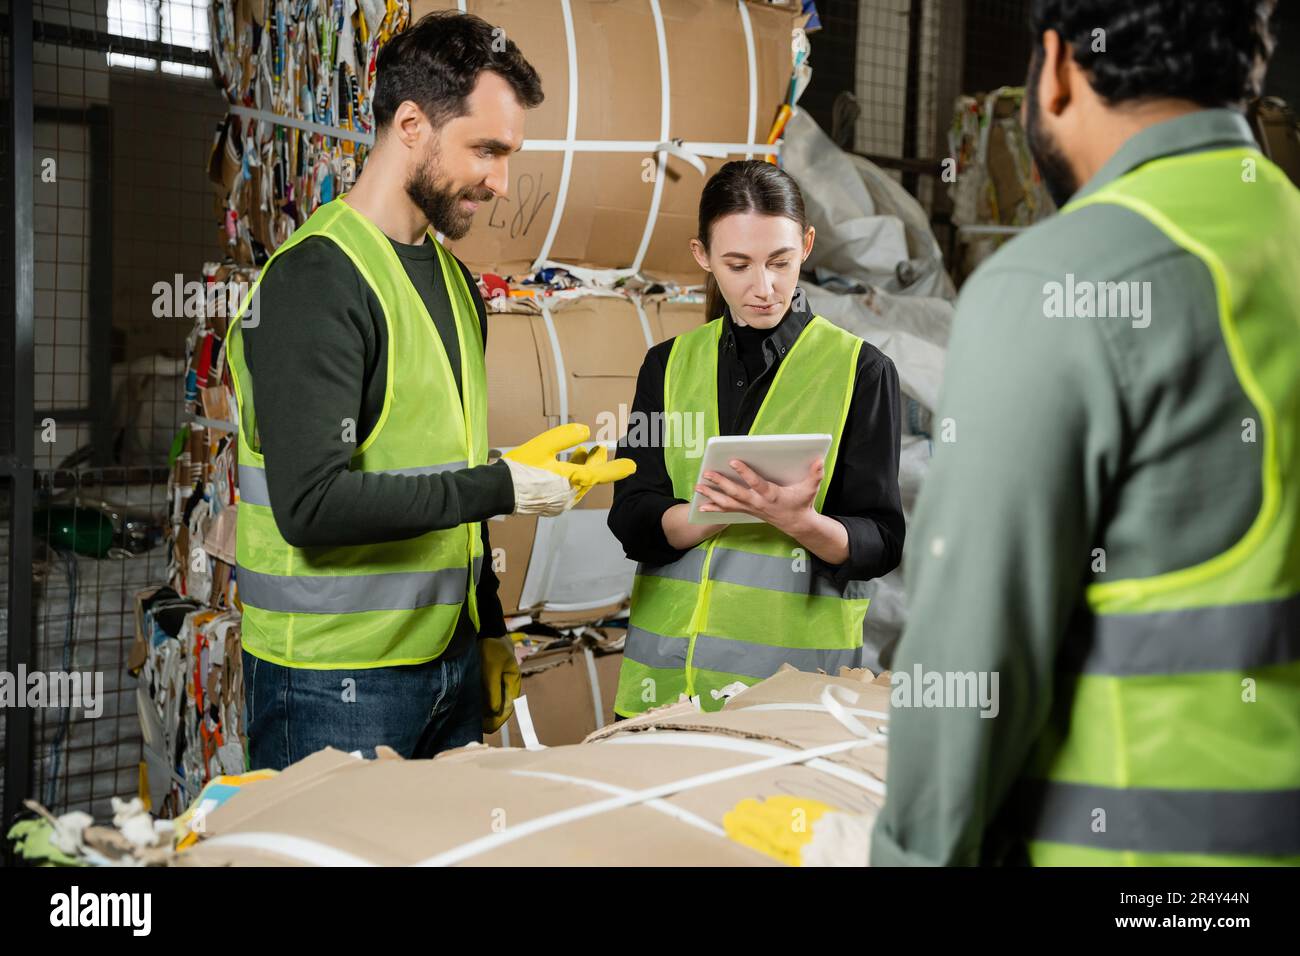 Jeune travailleur dans un gilet et des gants de protection utilisant une tablette numérique près de collègues multiethniques souriants et de déchets de papier dans le centre de tri des ordures, déchets Banque D'Images